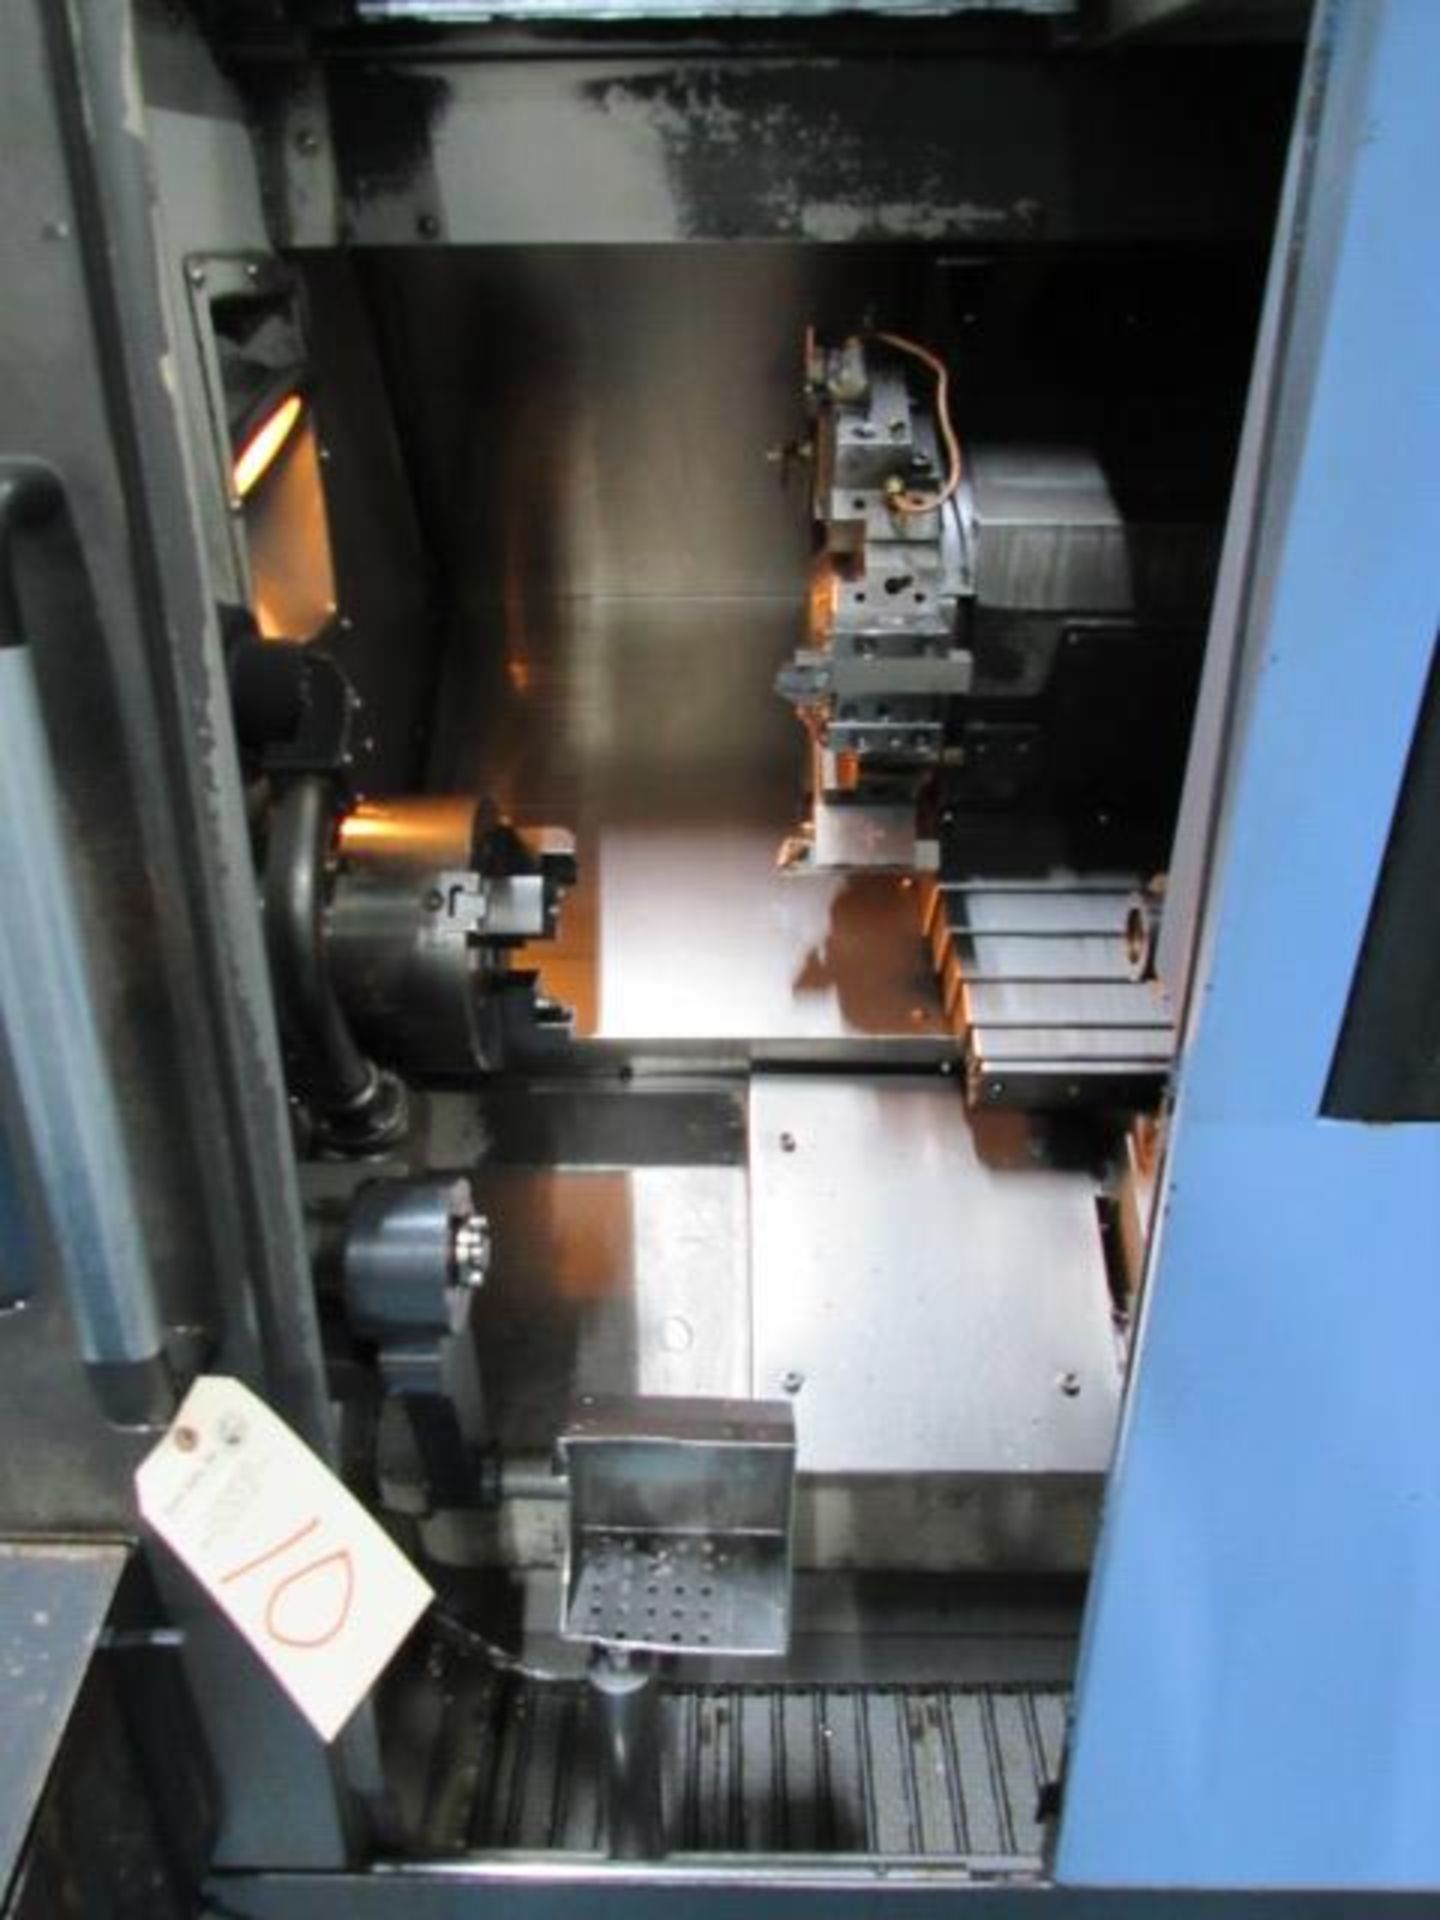 Doosan Lynx 220 B/C CNC Turning Center - Image 6 of 8